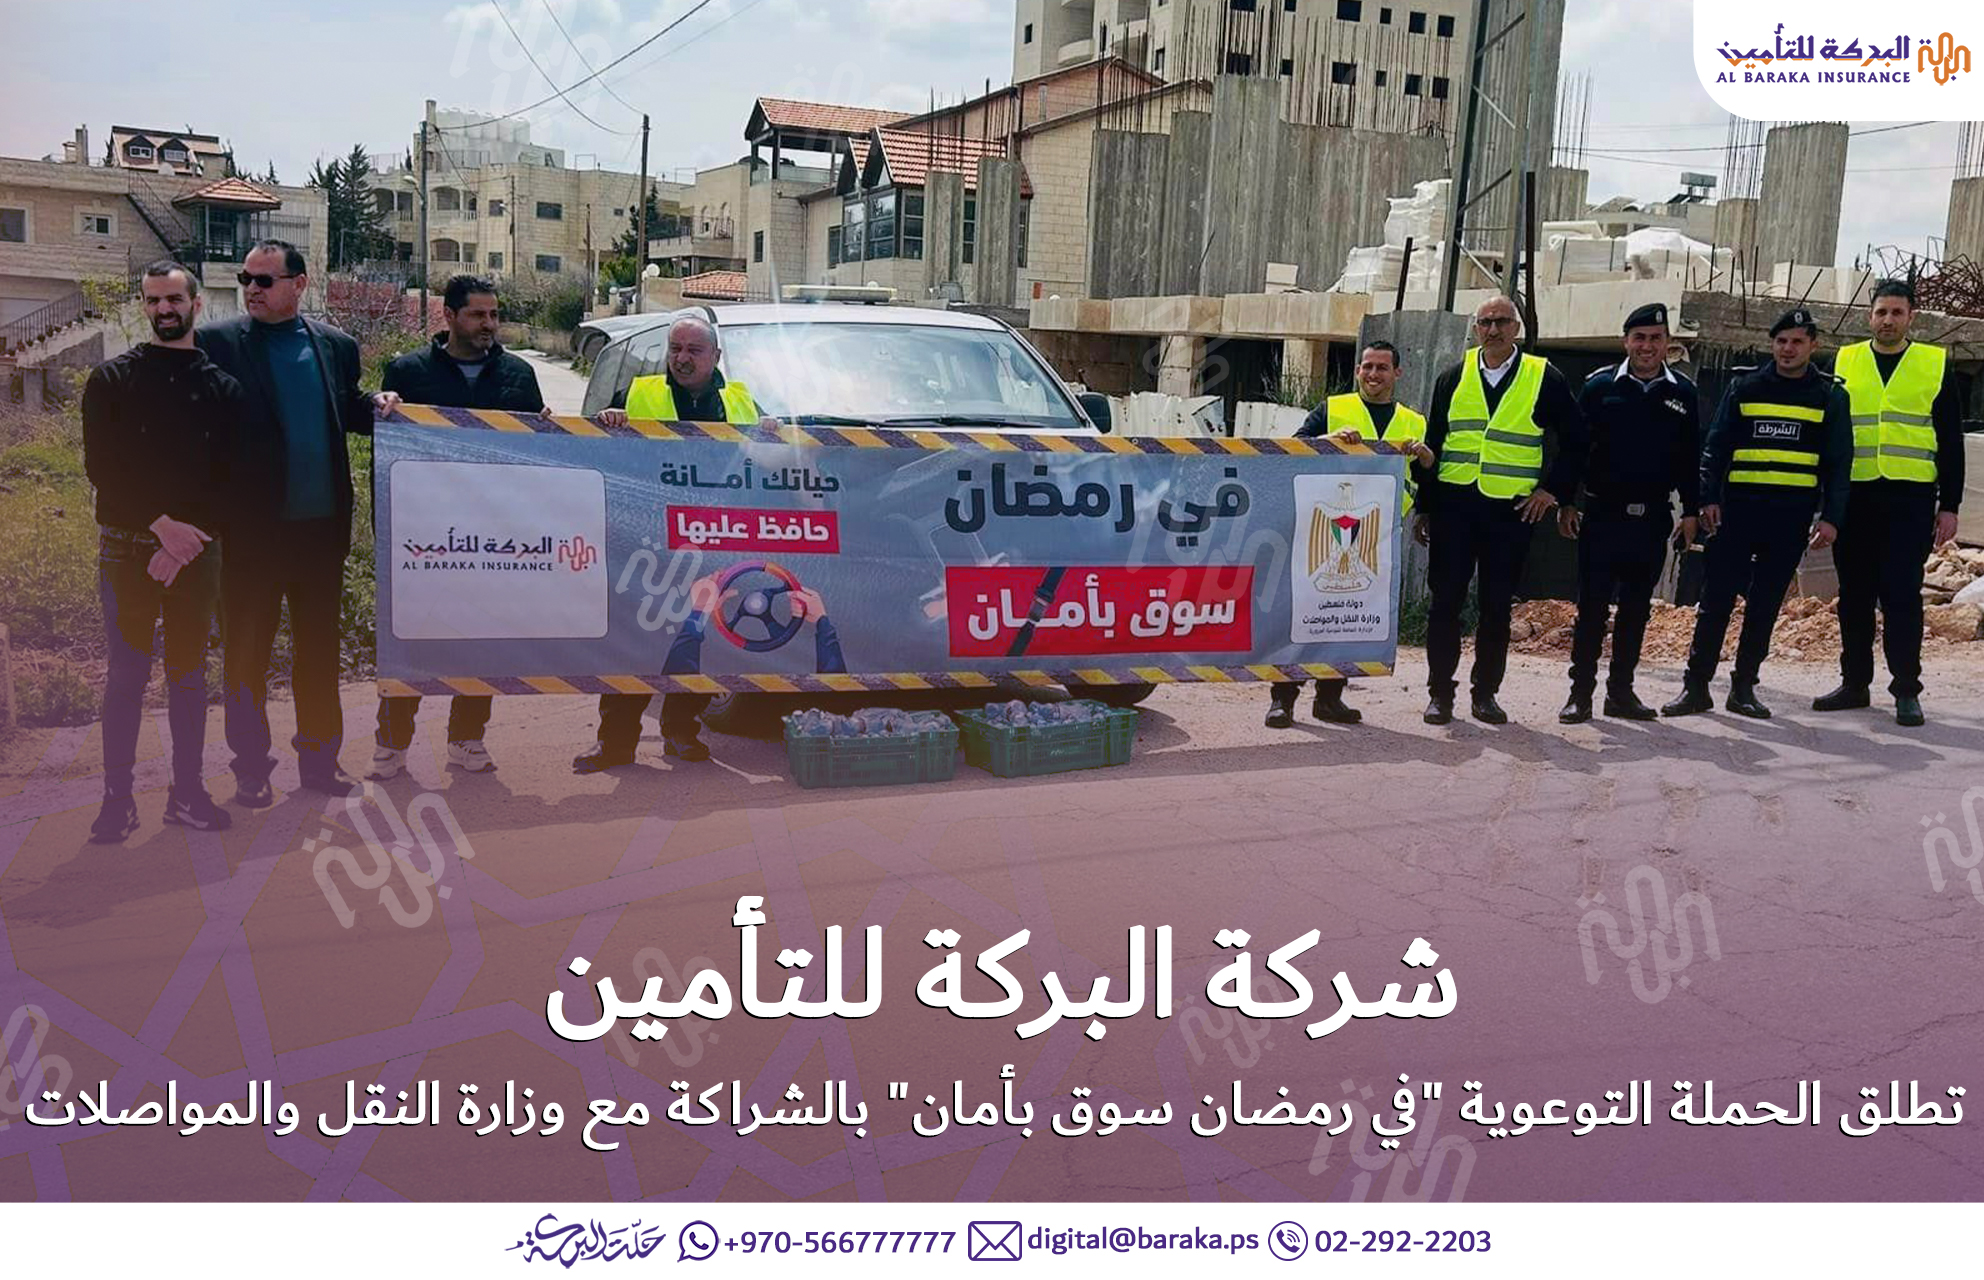 شركة البركة للتأمين تطلق الحملة التوعوية "في رمضان سوق بأمان" بالشراكة مع وزارة النقل والمواصلات